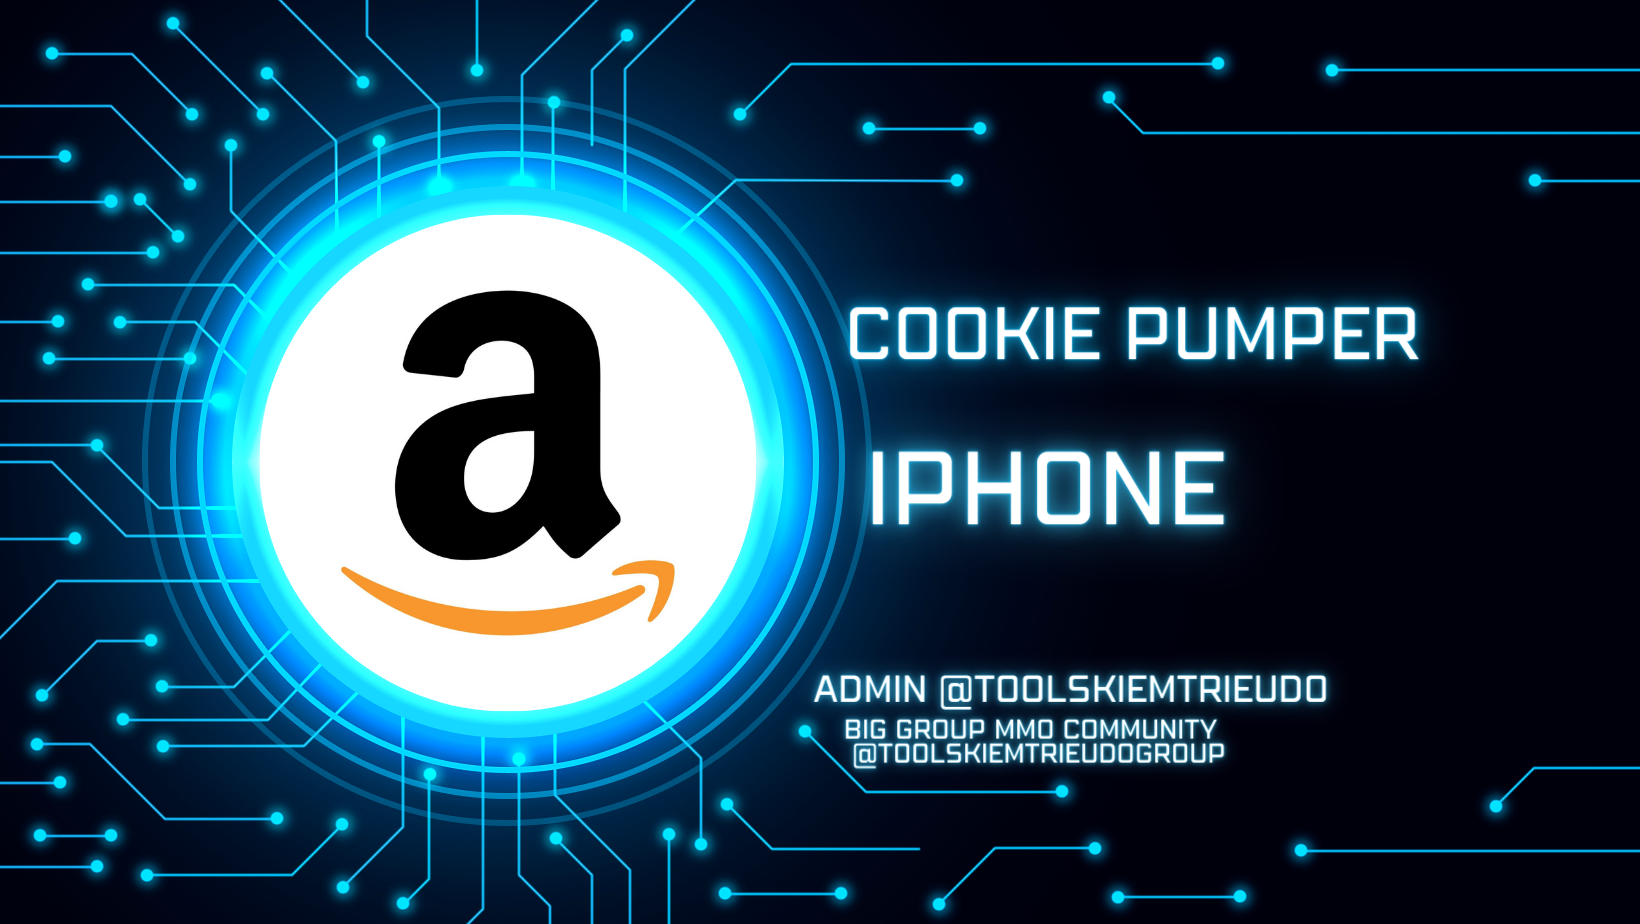 Công cụ nuôi tài khoản amazon trên iphone như người dùng thật- Amazon cookie Pumper on iphone Automation like a human